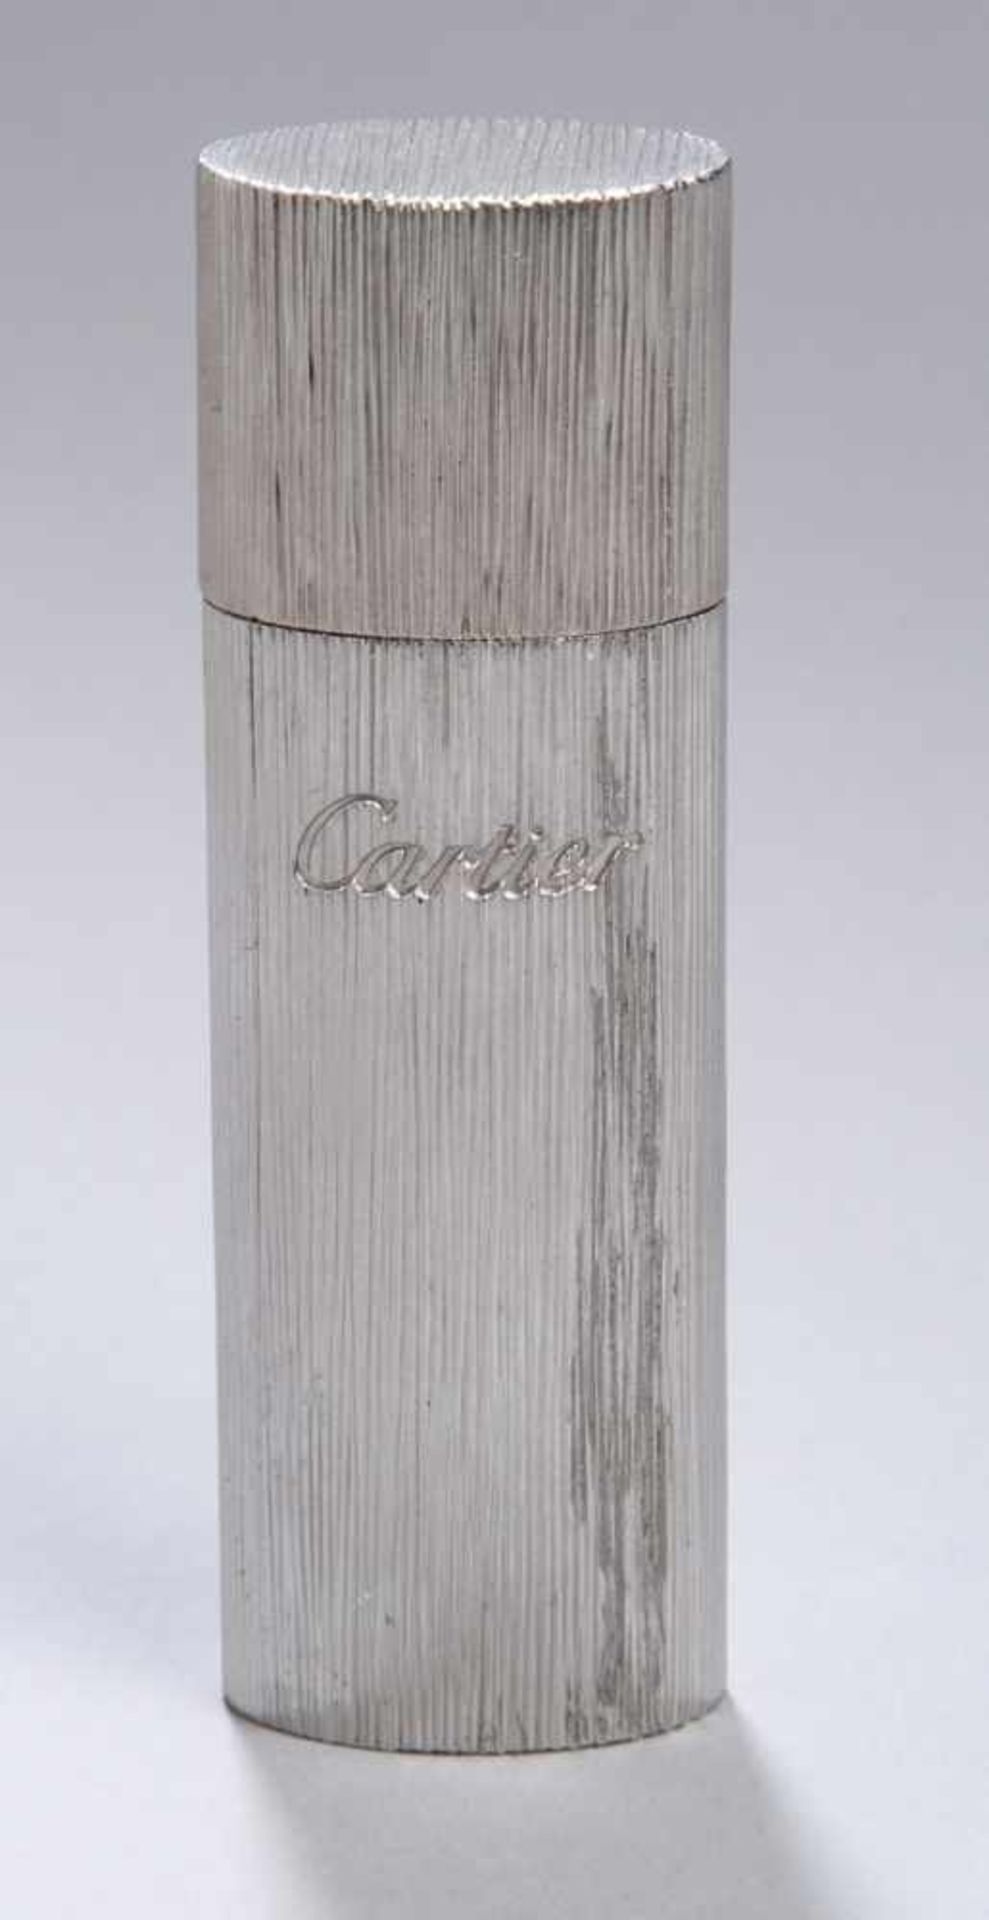 Zahnstocher-Behälter, Cartier, 2. Hälfte 20. Jh., versilbert, zylindrische Form, Wandungmit